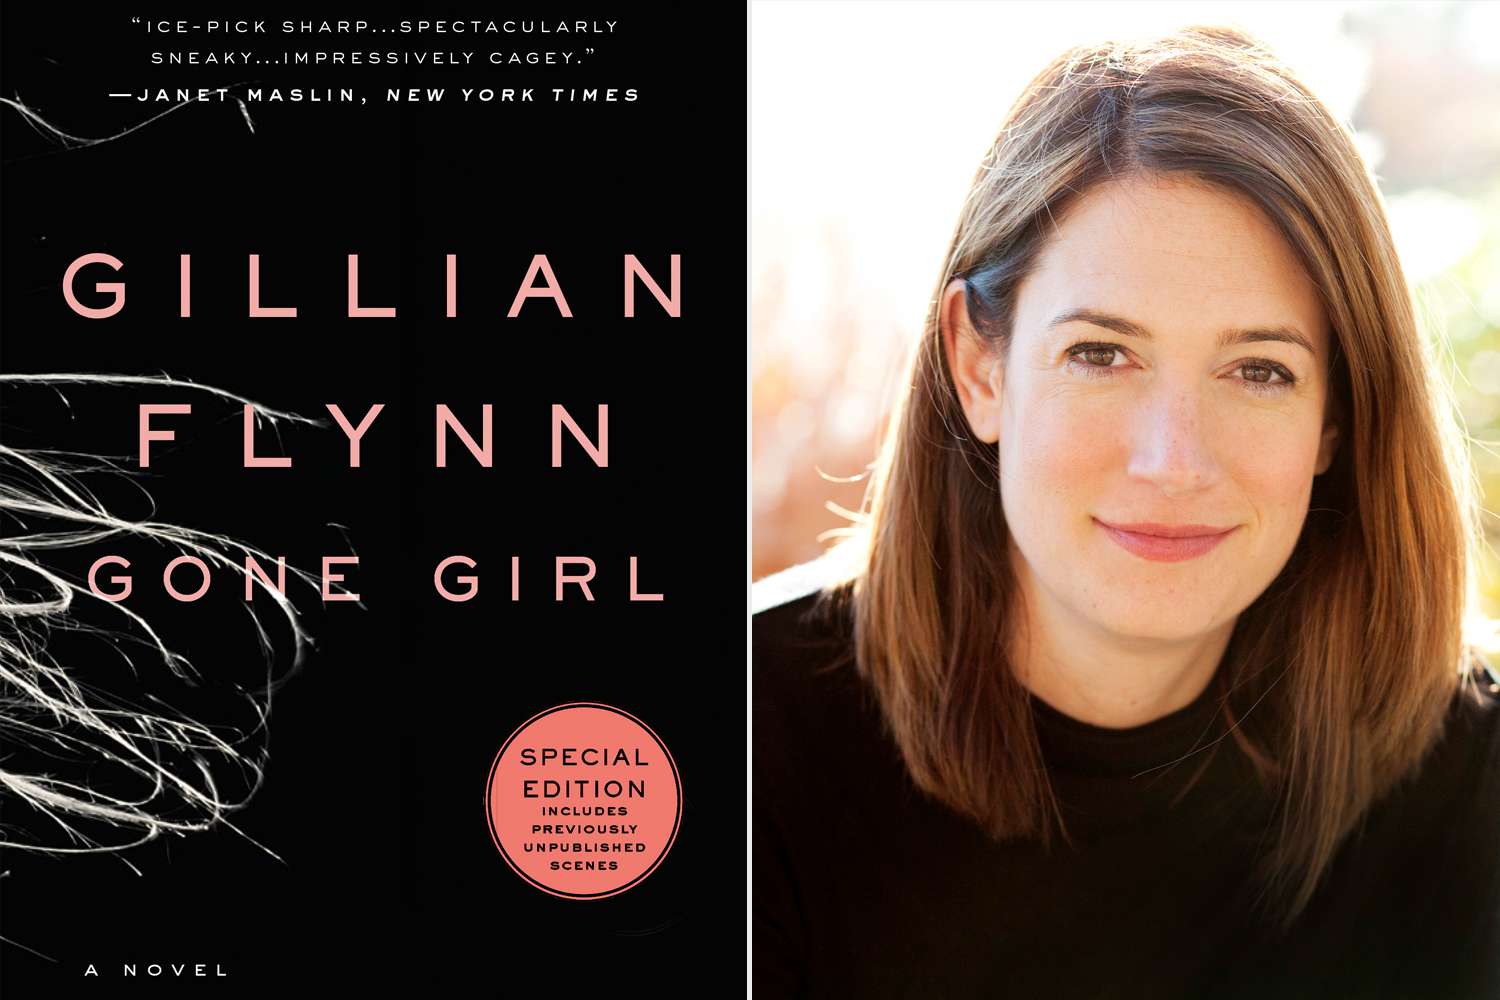 Gone Girl Berumur 10! Baca Bagian yang Belum Pernah Dilihat dari Buku Gillian Flynn Sebelum Ulang Tahun